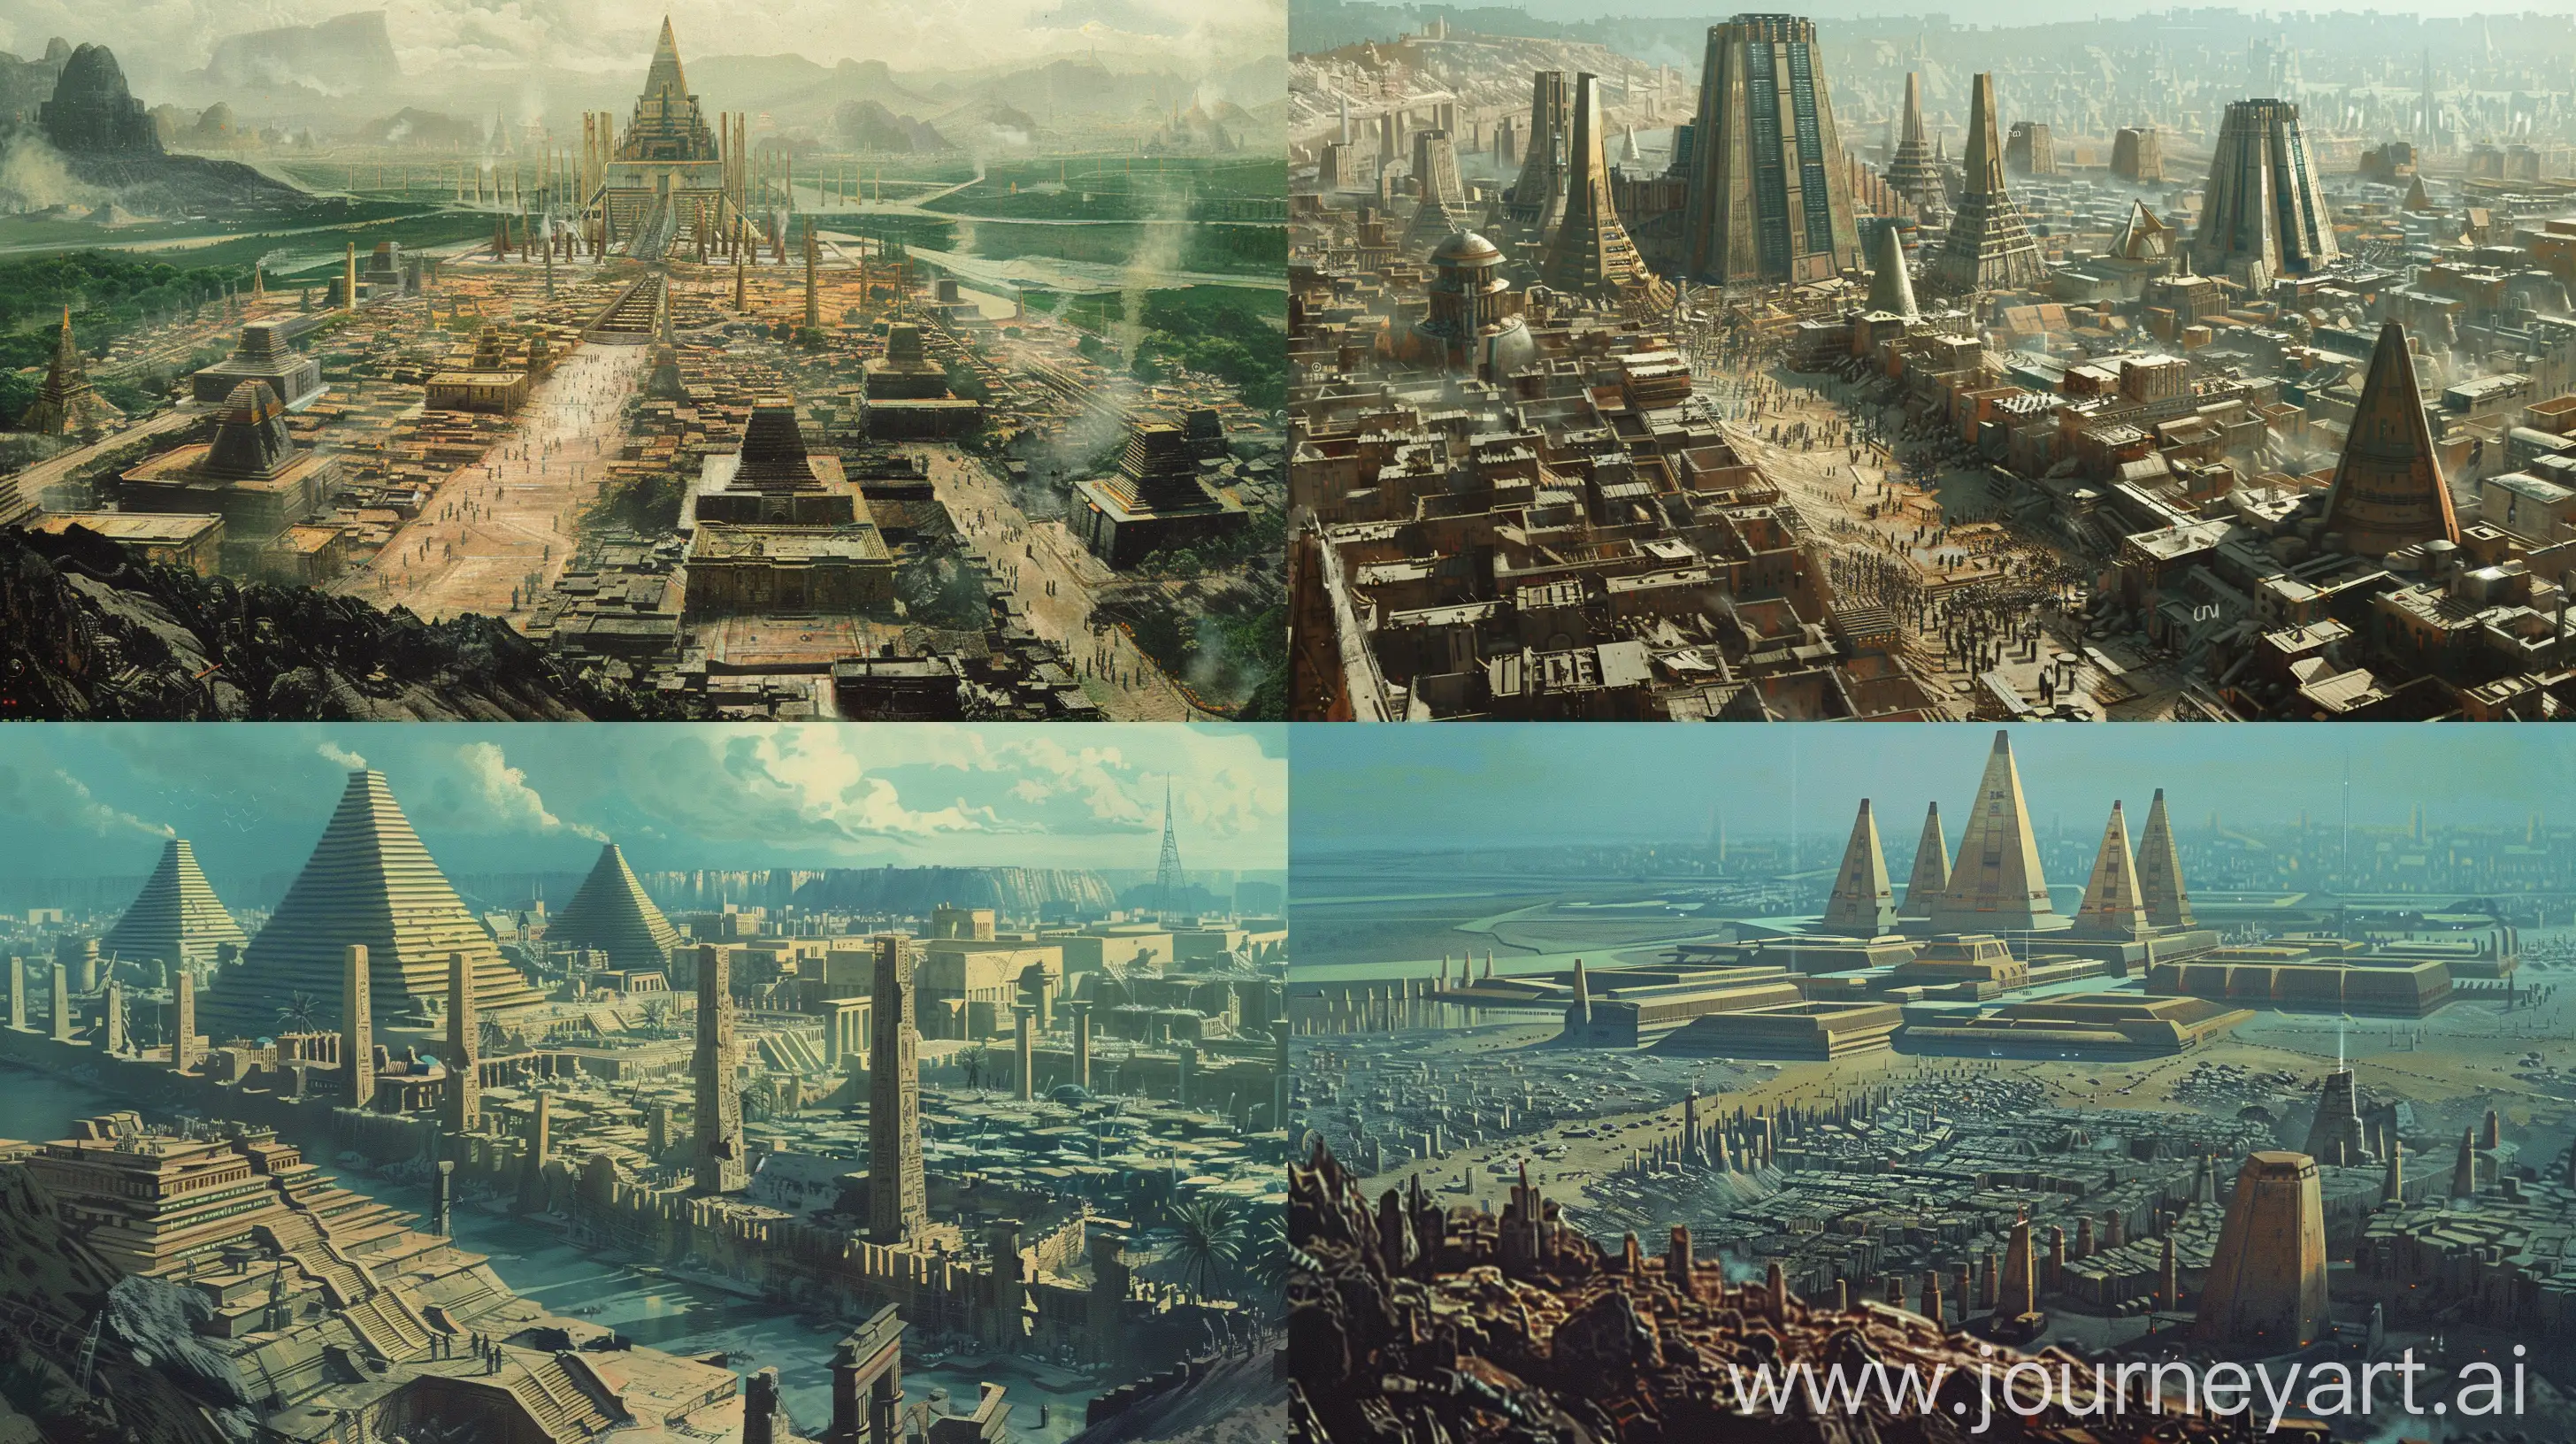 Majestic-Futuristic-Cityscape-with-Retro-SciFi-Architecture-and-Contrasting-Slums